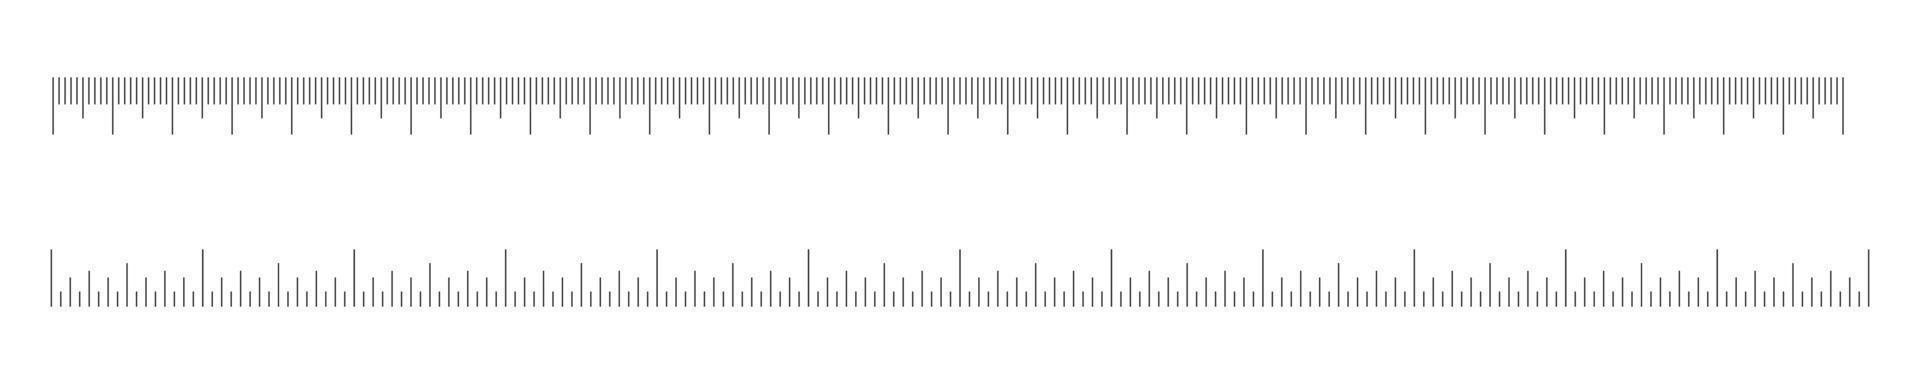 zentimeter- und ihch-linealskalen eingestellt. horizontales Messdiagramm mit Markup. Abstands-, Höhen- oder Längenmesswerkzeugvorlage vektor